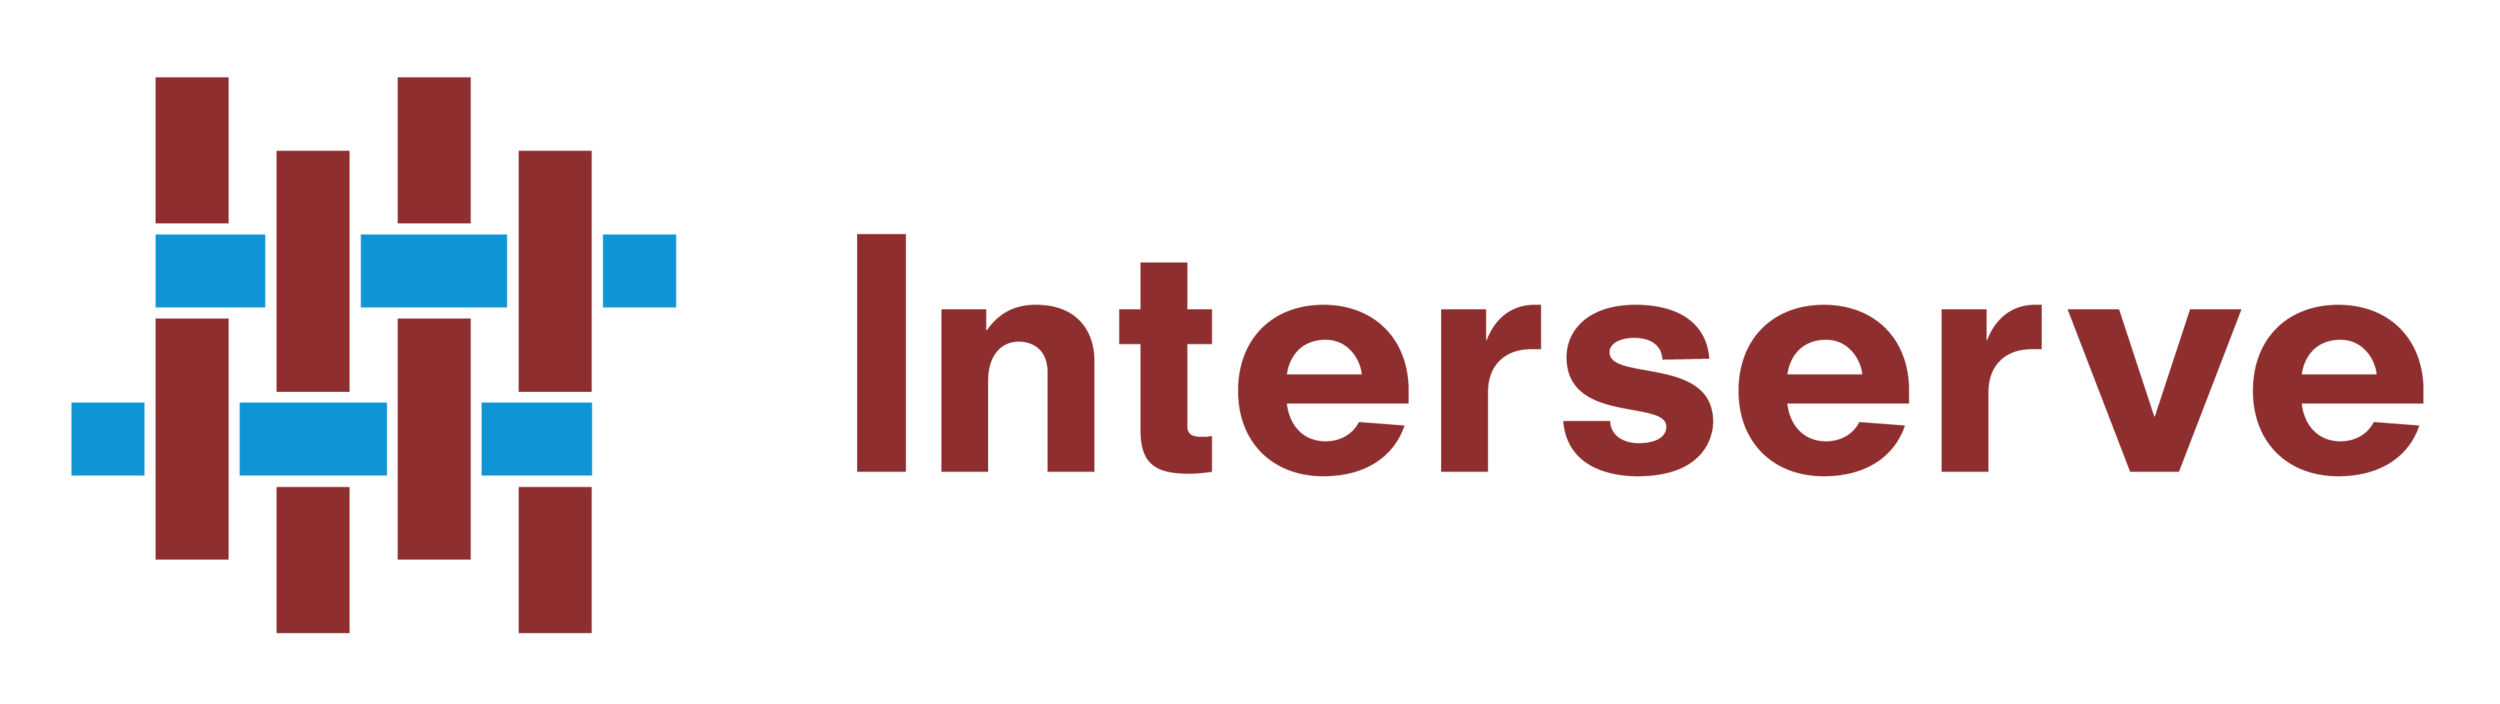 Interserve Logo.png